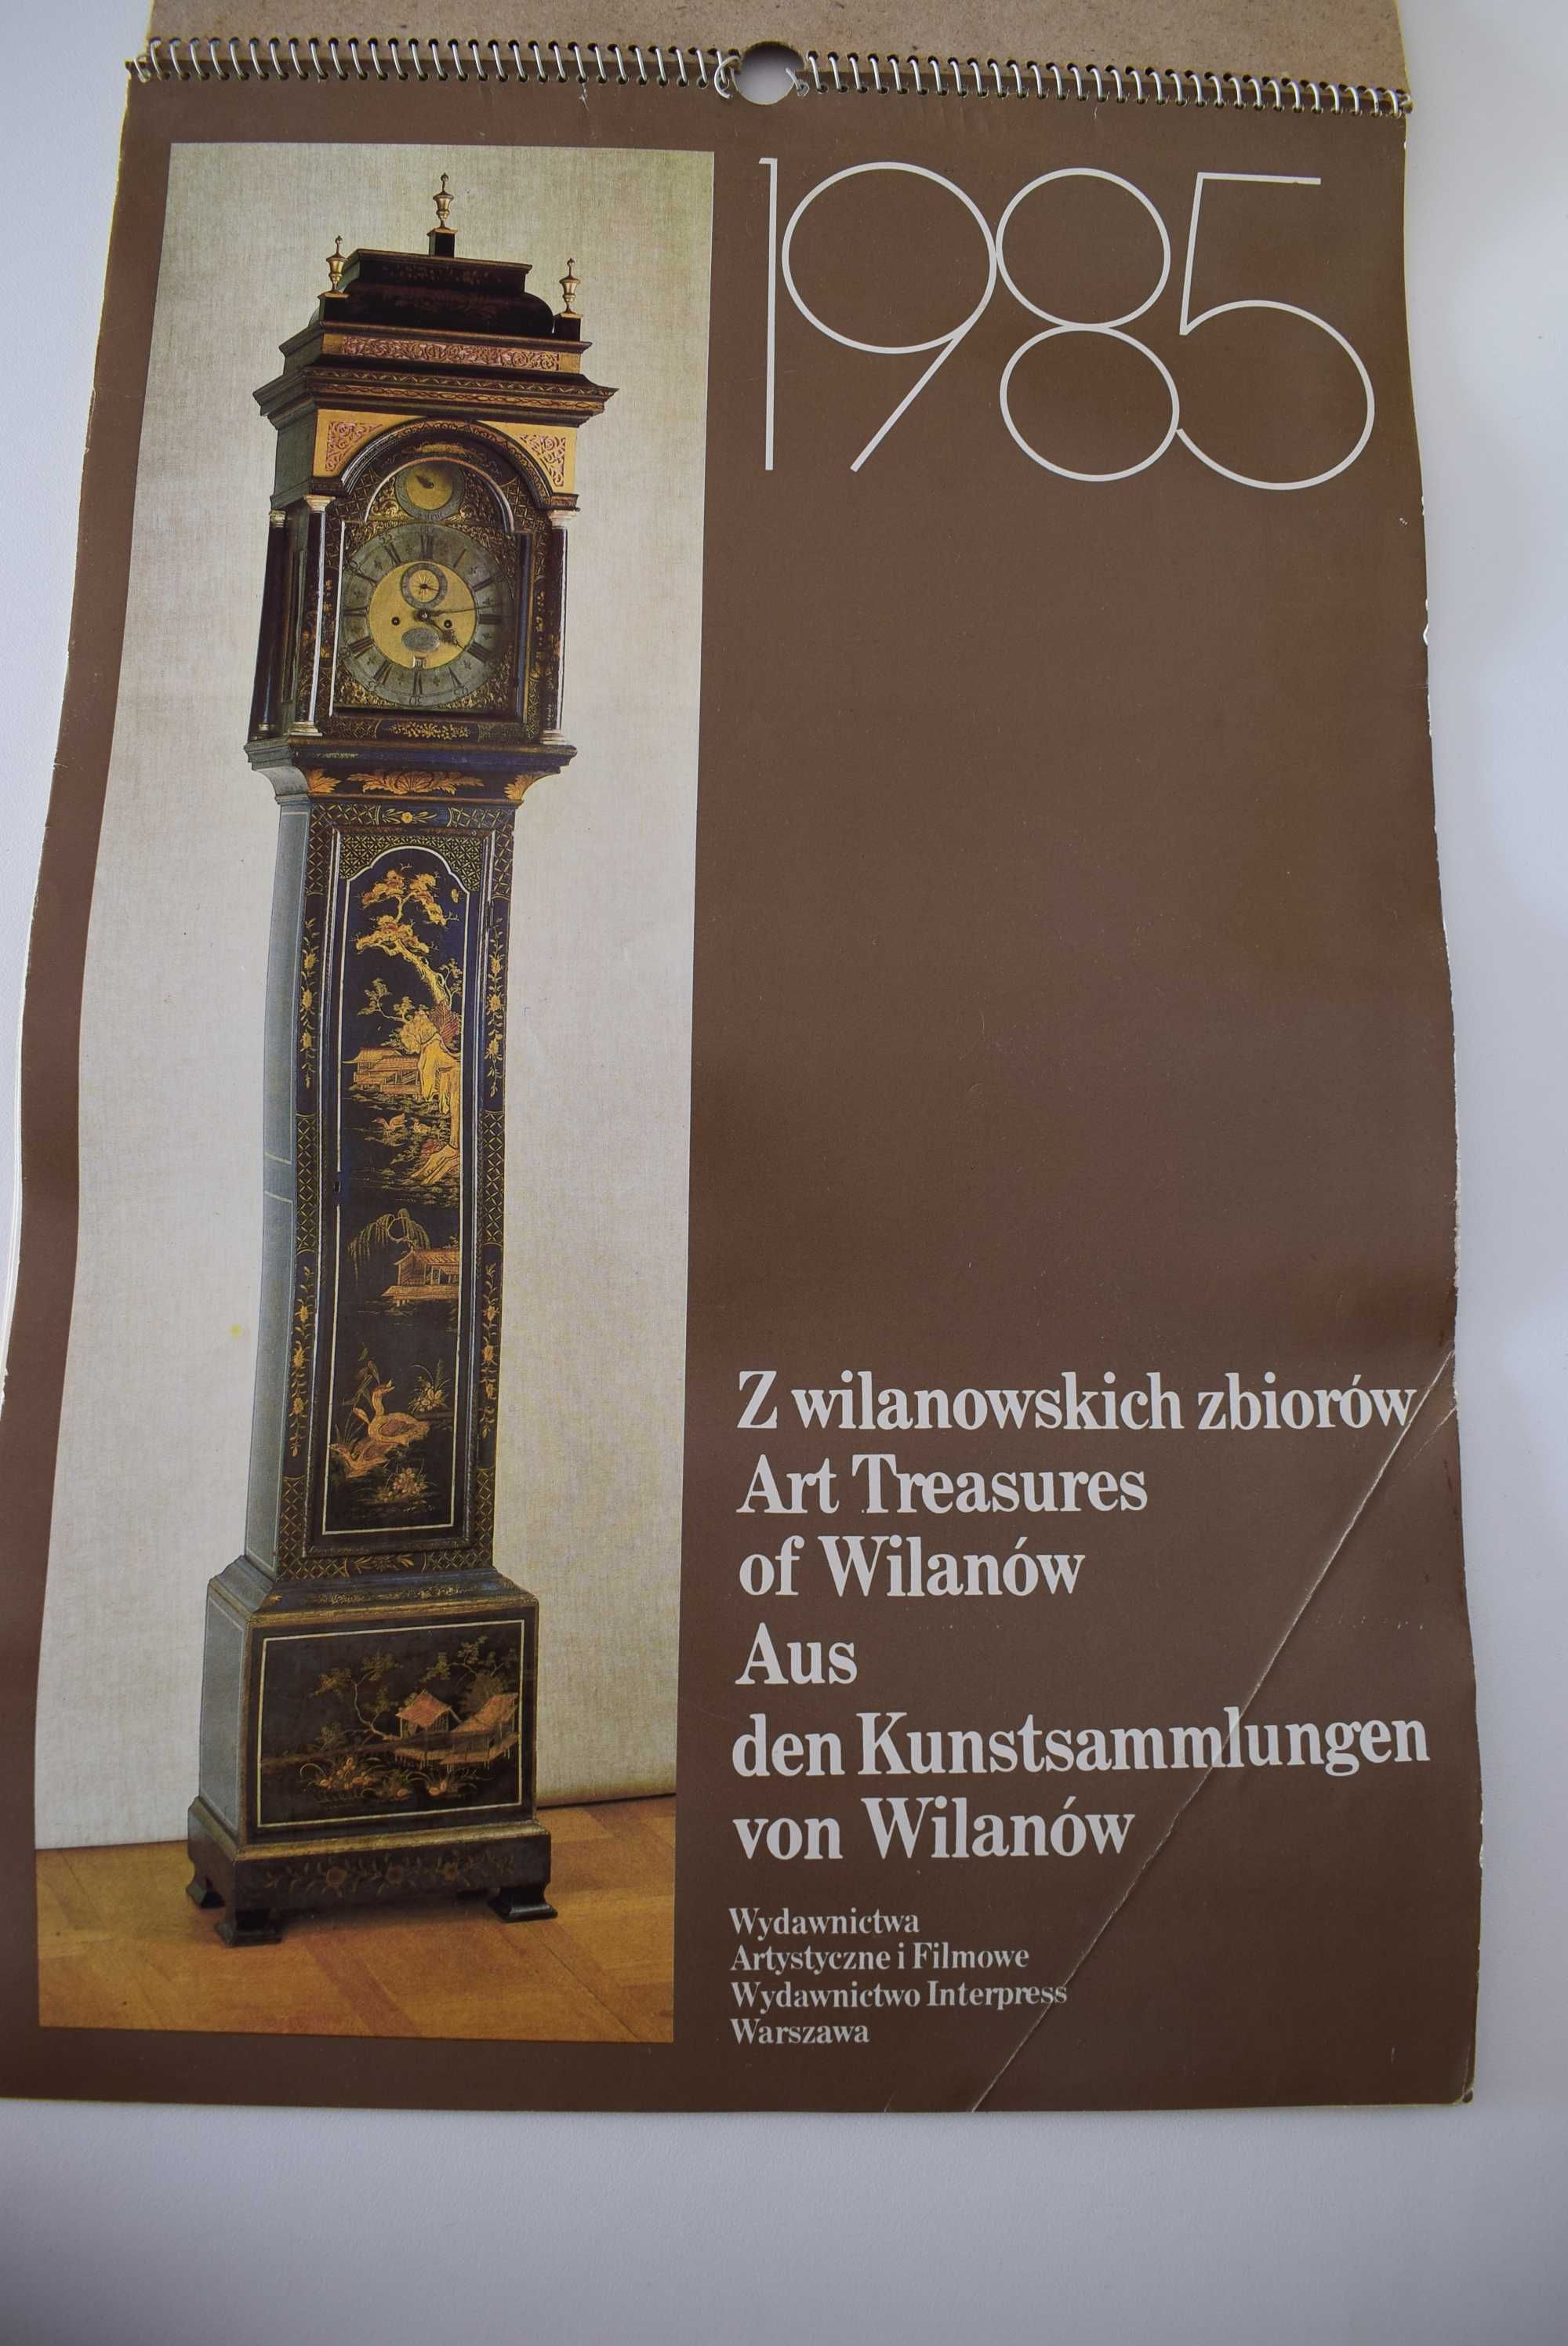 Dwa duże kalendarze z 1985 - stare zegary i antyki